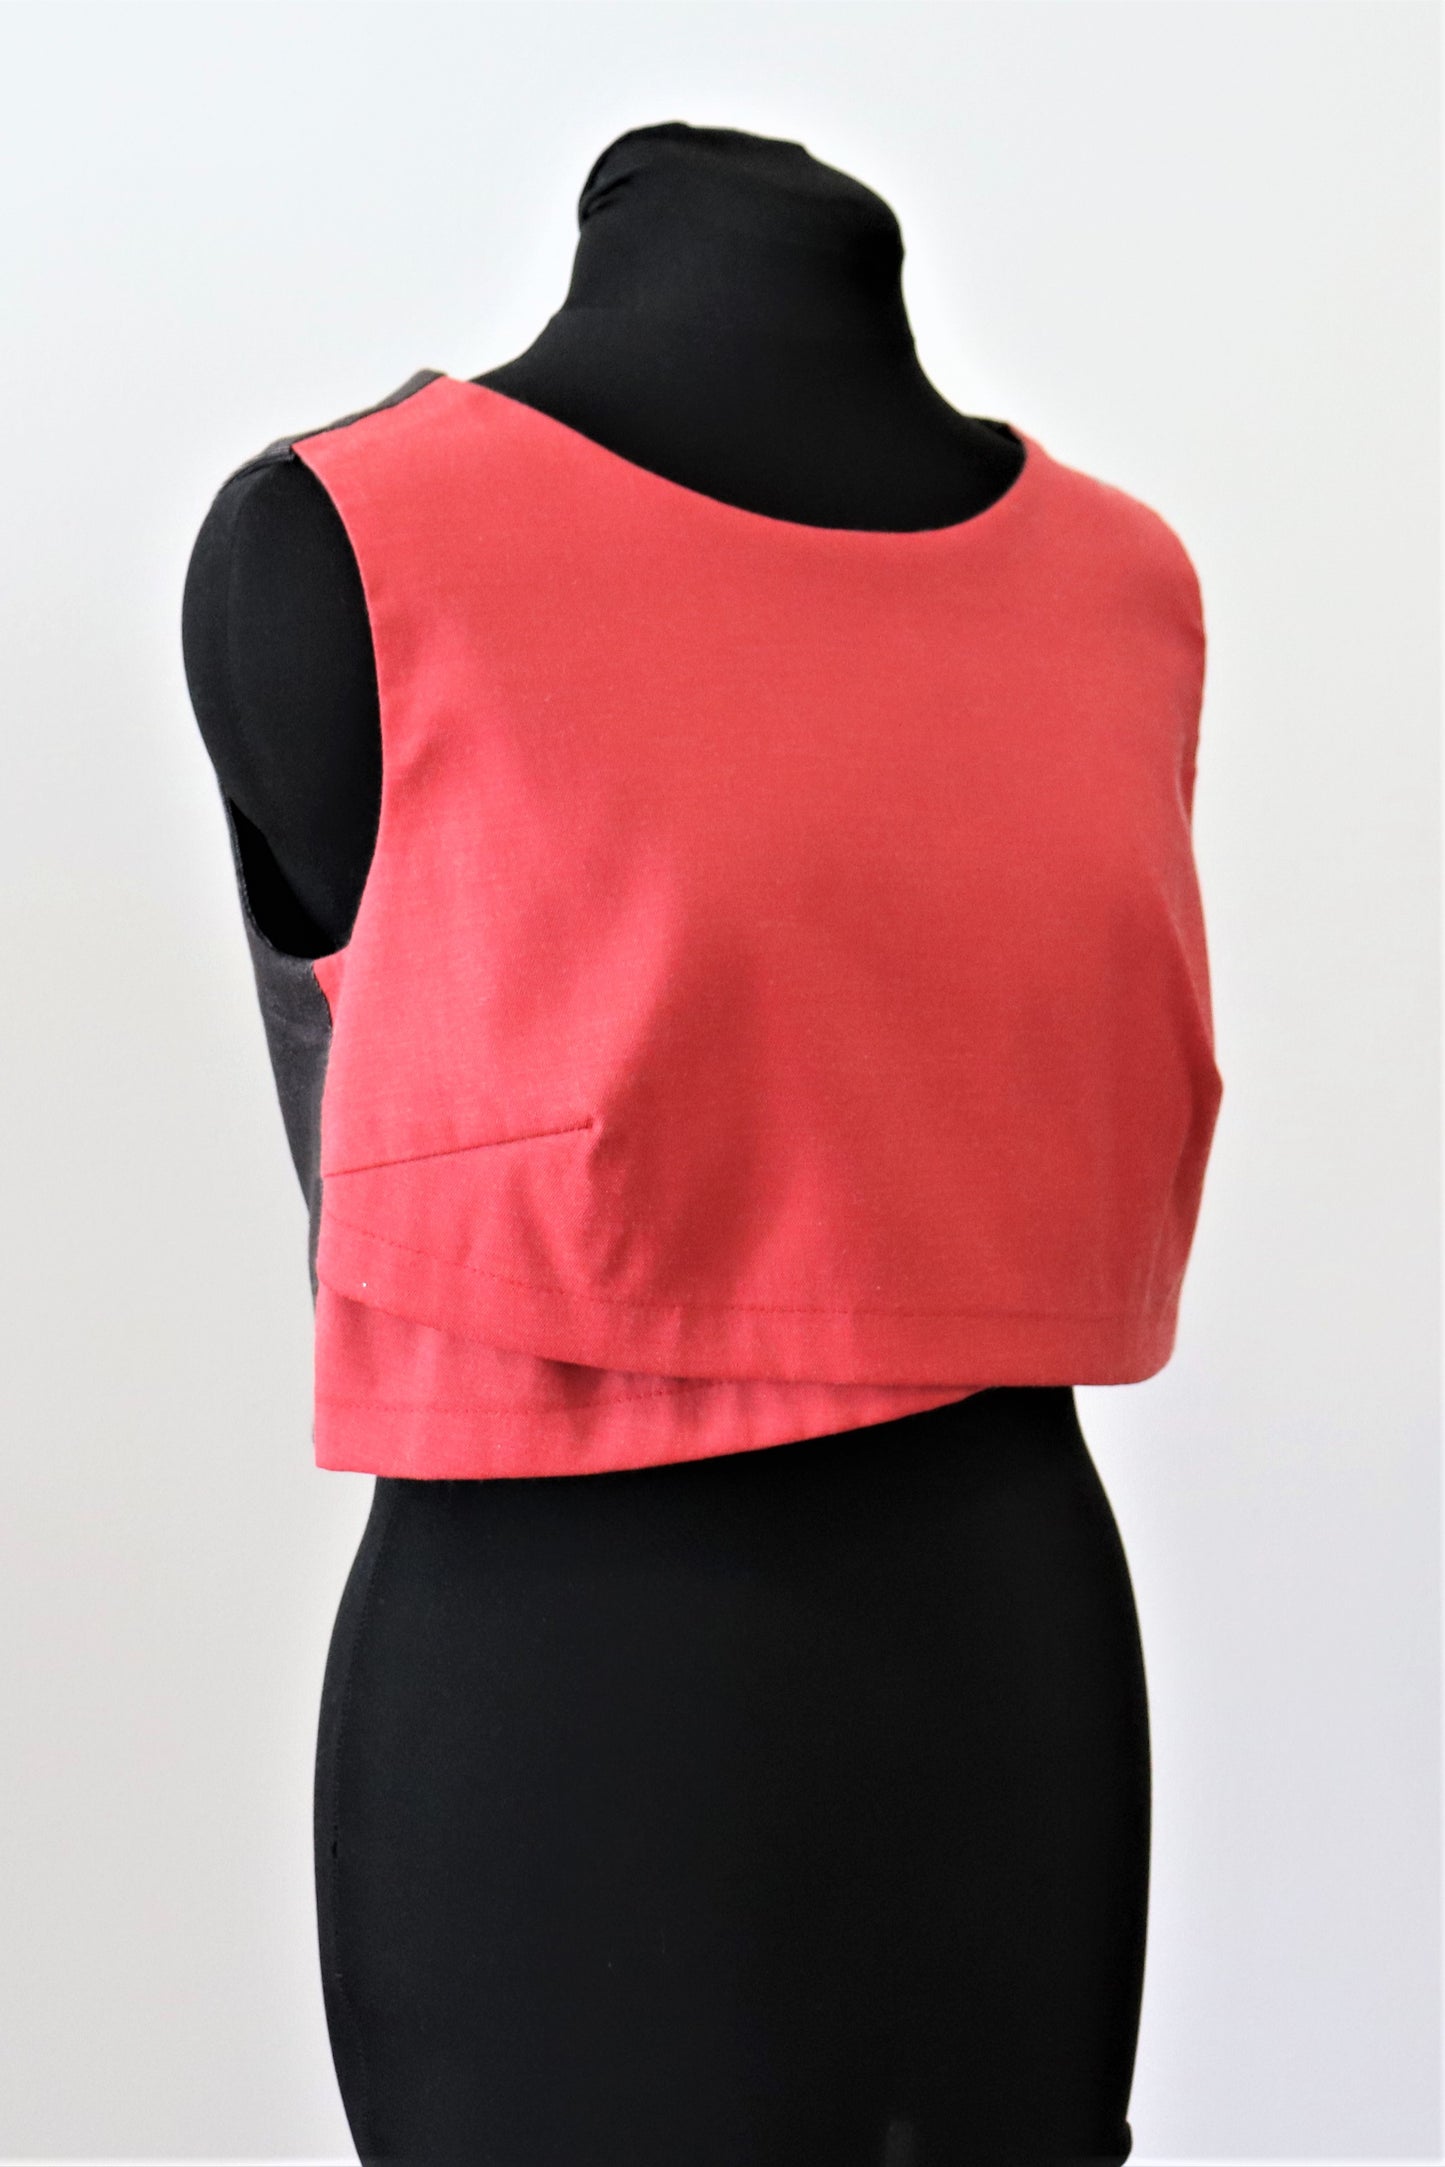 Women's Sleeveless Crop Top Round Neckline Pink